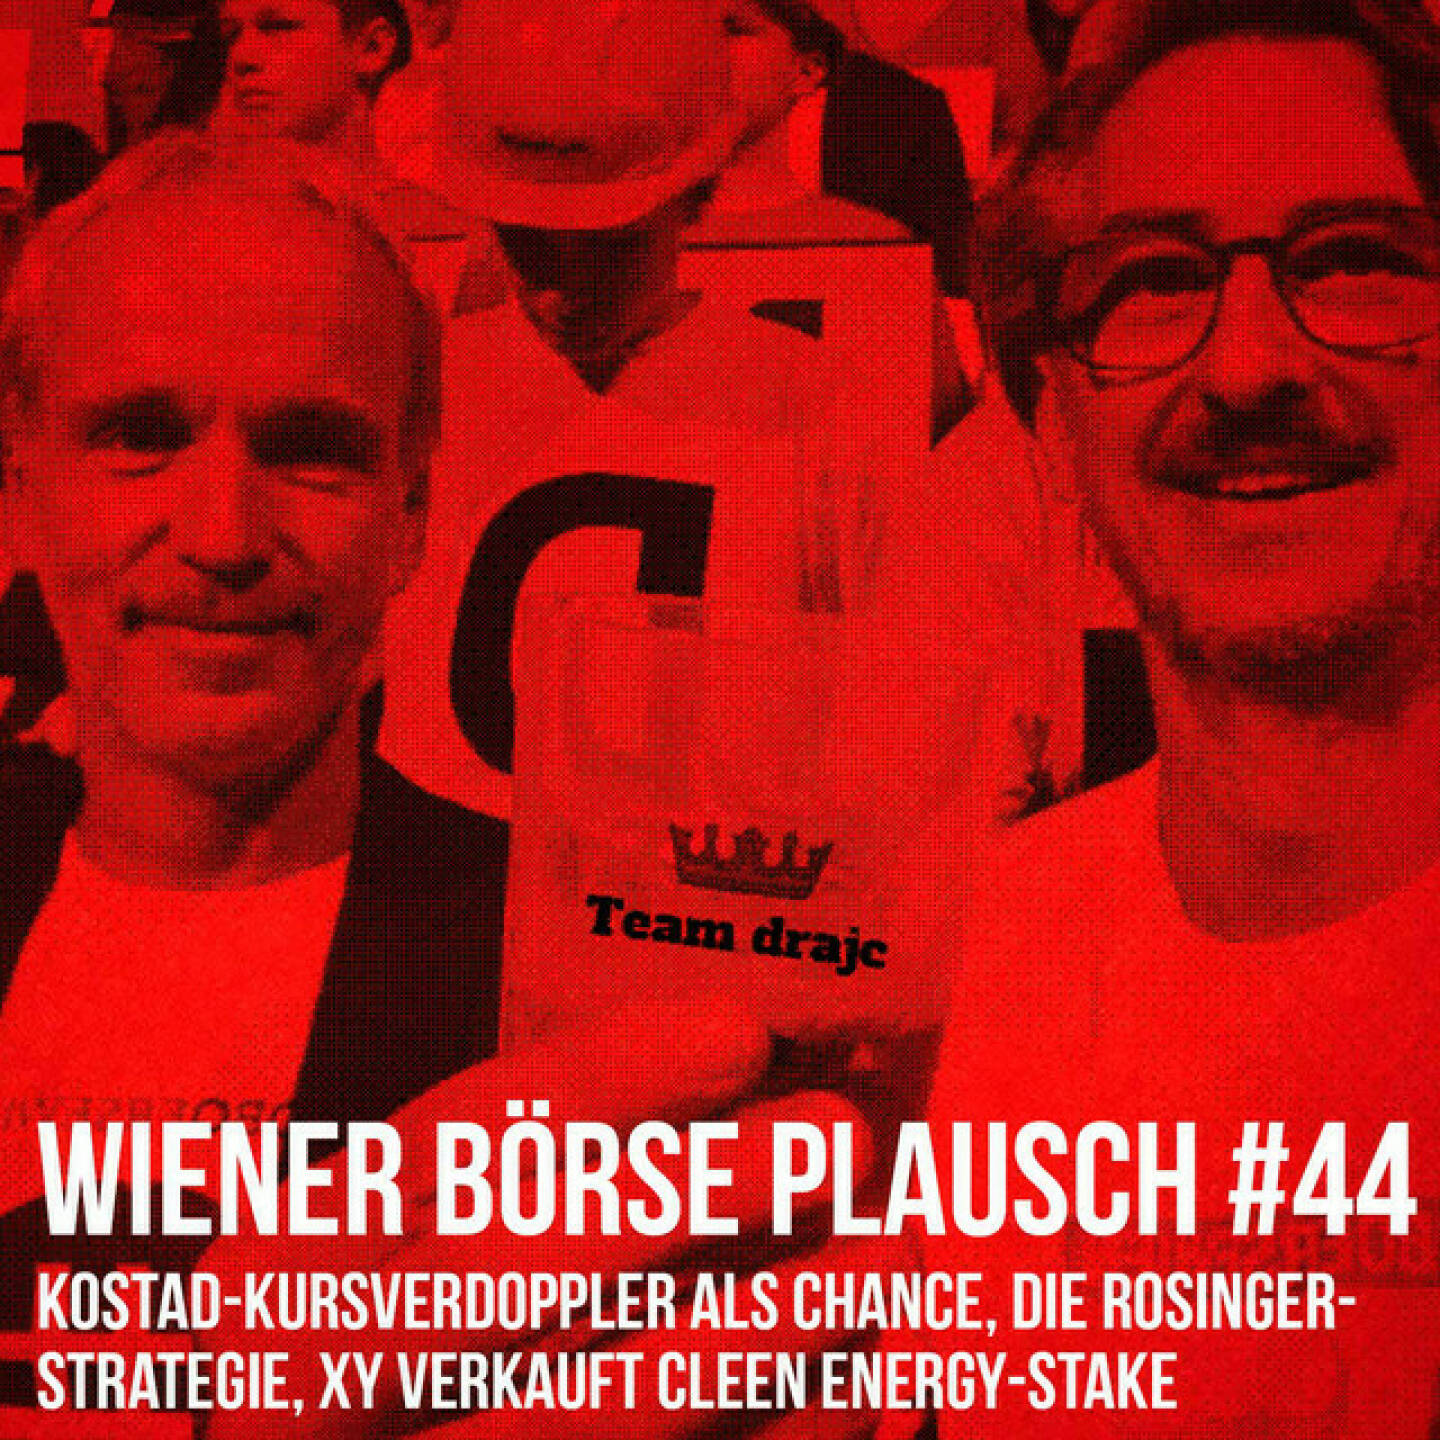 https://open.spotify.com/episode/1Mc55Kg449YNH0Ws09mmVG
Wiener Börse Plausch #44: Kostad-Kursverdoppler als Chance, die Rosinger-Strategie, XY verkauft Cleen Energy-Stake - <br><p>Team drajc, das sind die Börse Social Network Eigentümer Christian Drastil und Josef Chladek, quatscht in Wiener Börse Plausch #44 wieder über das aktuelle Geschehen in Wien. Heute geht es um Updates zu <strong>Erste Group</strong> und <strong>Porr</strong>, die Kursverdoppelung bei <strong>Kostad</strong>, die <strong>Rosinger-Strategie</strong> und das Unternehmen, dessen Namen wir nicht nennen, mit einem erfolgreichen Teil-Exit bei <strong>Cleen Energy</strong>. </p>
<p><em>Die Dezember-Folgen vom Wiener Börse Plausch sind präsentiert von der <strong>Rosinger Group</strong>, die sich mit einem Angebot an Listing-Interessierte UnternehmerInnen richtet und einen Rekord im Rosgix feiern kann.</em></p>
<p><em><strong>Risikohinweis:</strong> Die hier veröffentlichten Gedanken sind weder als Empfehlung noch als ein Angebot oder eine Aufforderung zum An- oder Verkauf von Finanzinstrumenten zu verstehen und sollen auch nicht so verstanden werden. Sie stellen lediglich die persönliche Meinung der Podcastmacher dar. Der Handel mit Finanzprod ukten unterliegt einem Risiko. Sie können Ihr eingesetztes Kapital verlieren.</em></p>